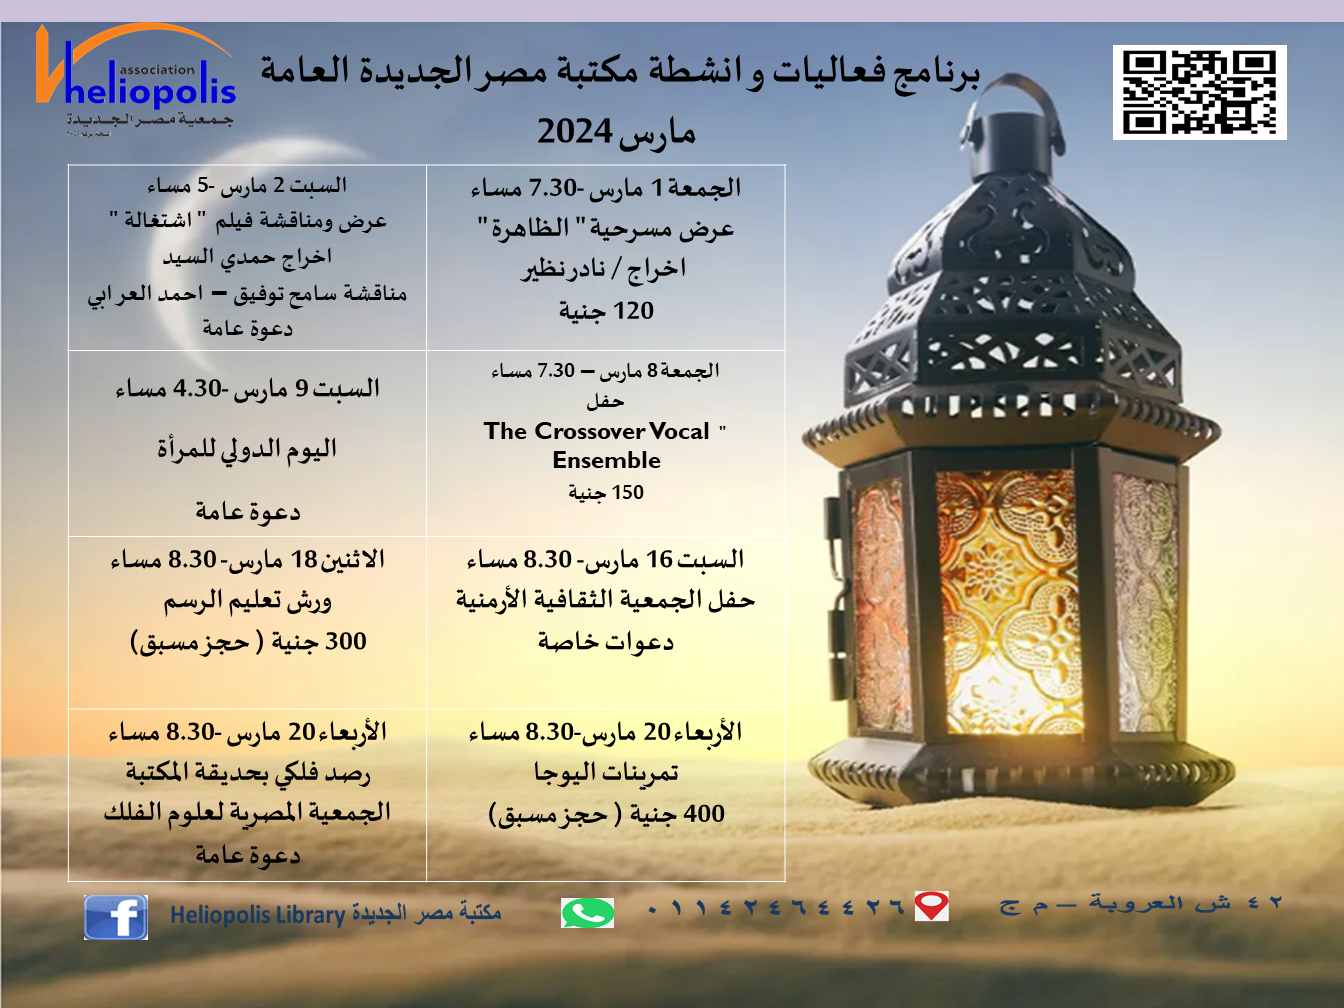 الفعاليات الشهرية لمكتبة مصر الجديدة العامة مارس 2024